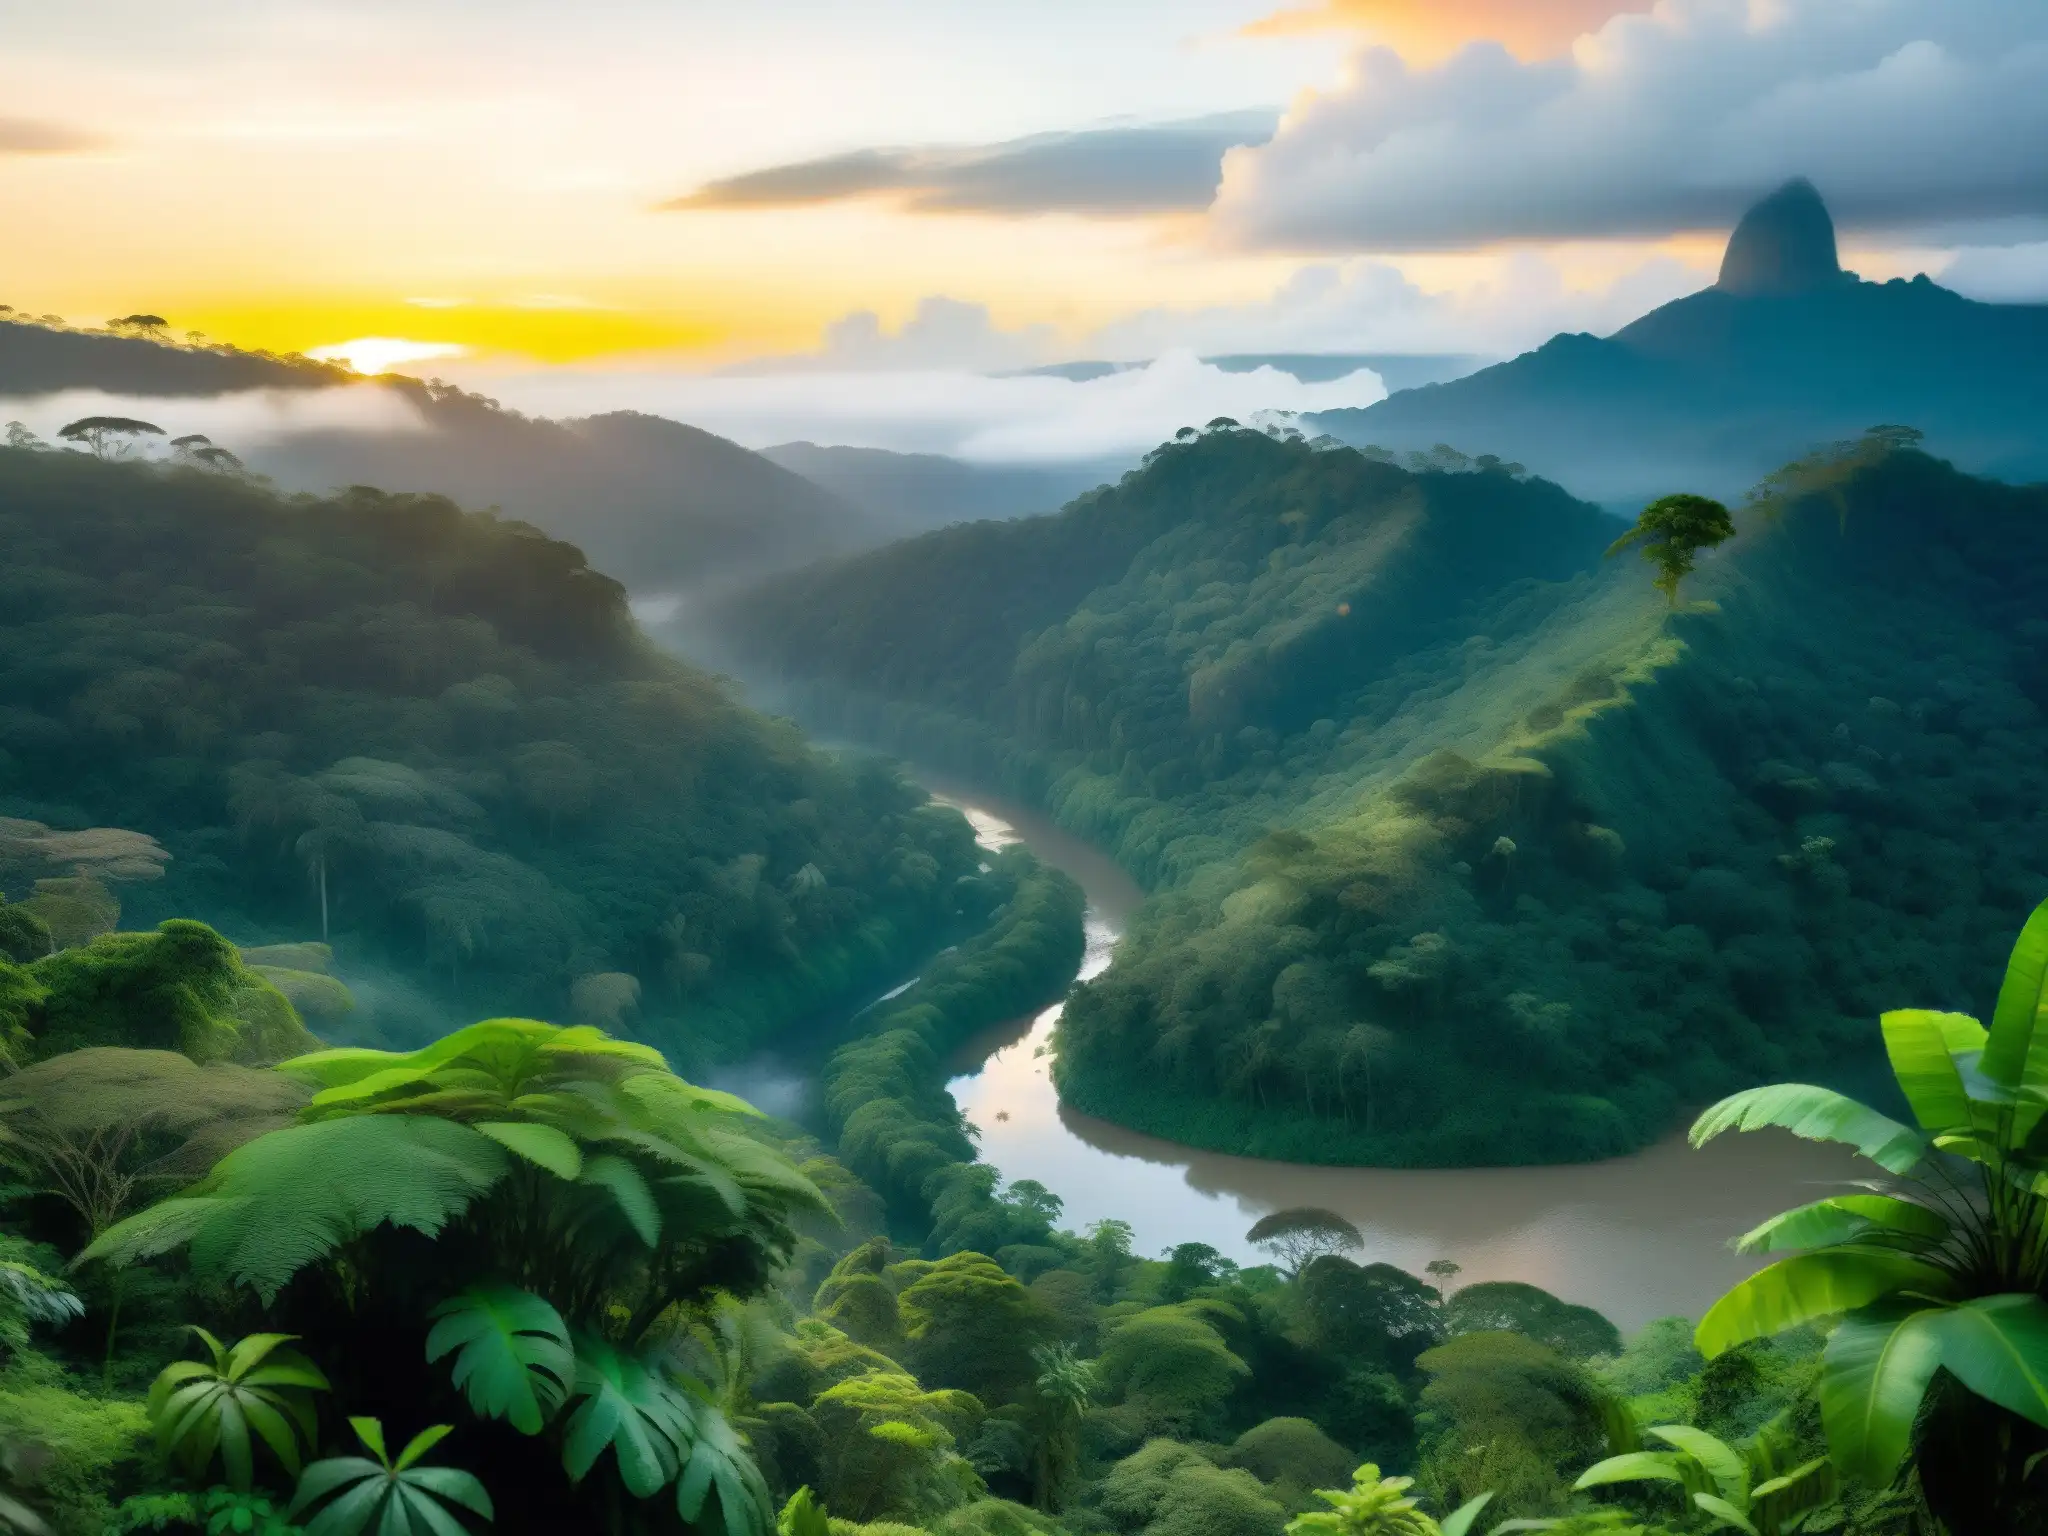 El misterioso y exuberante bosque colombiano al atardecer, reflejando La Tunda folclore Colombiano